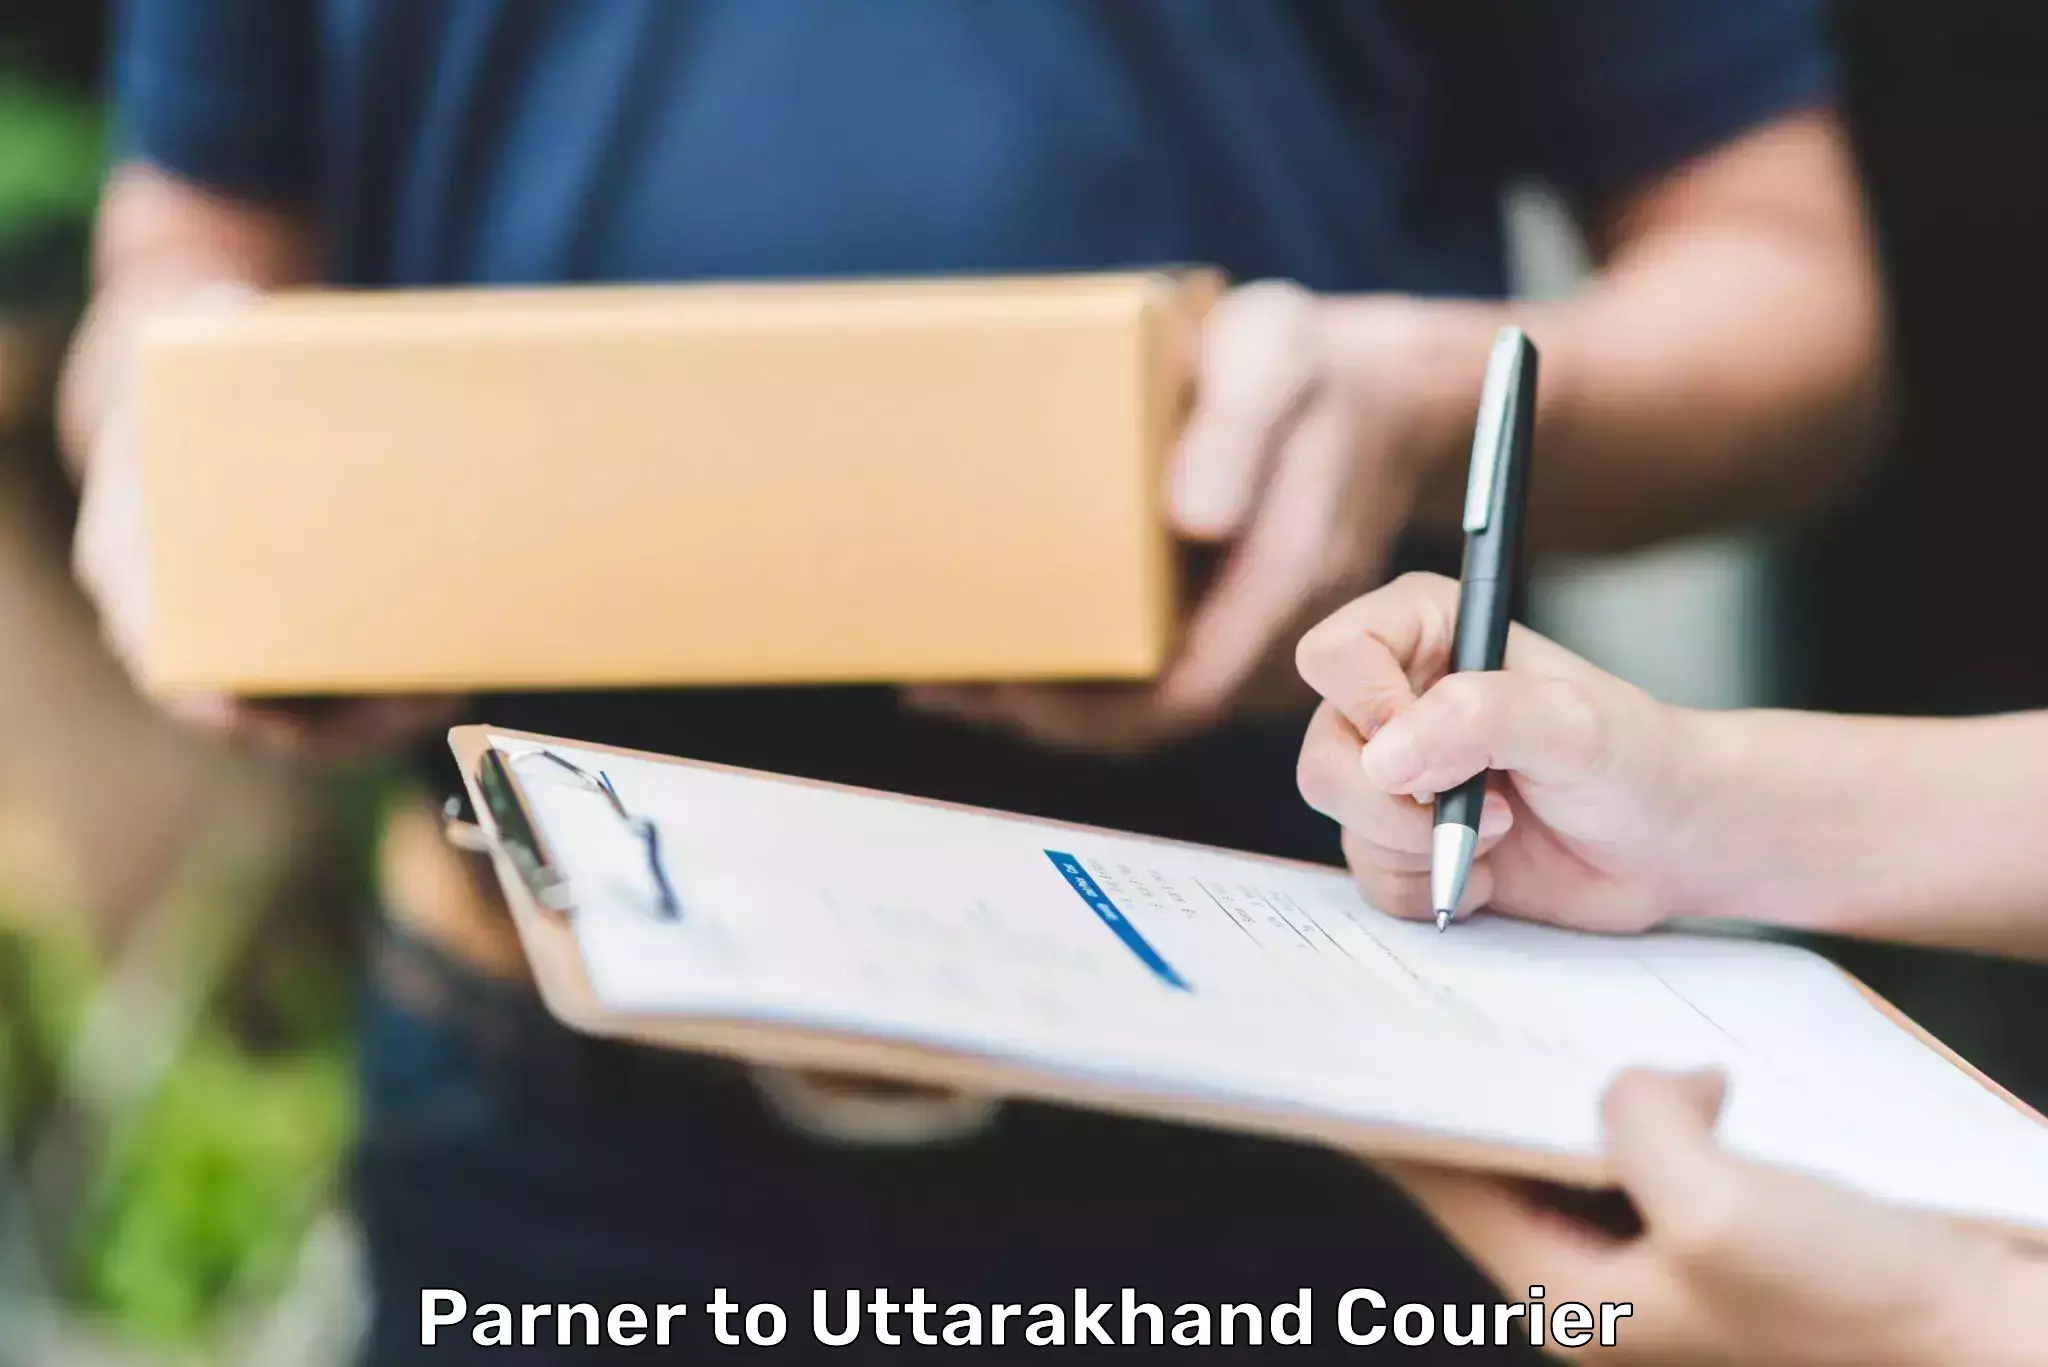 Efficient parcel delivery Parner to Uttarakhand